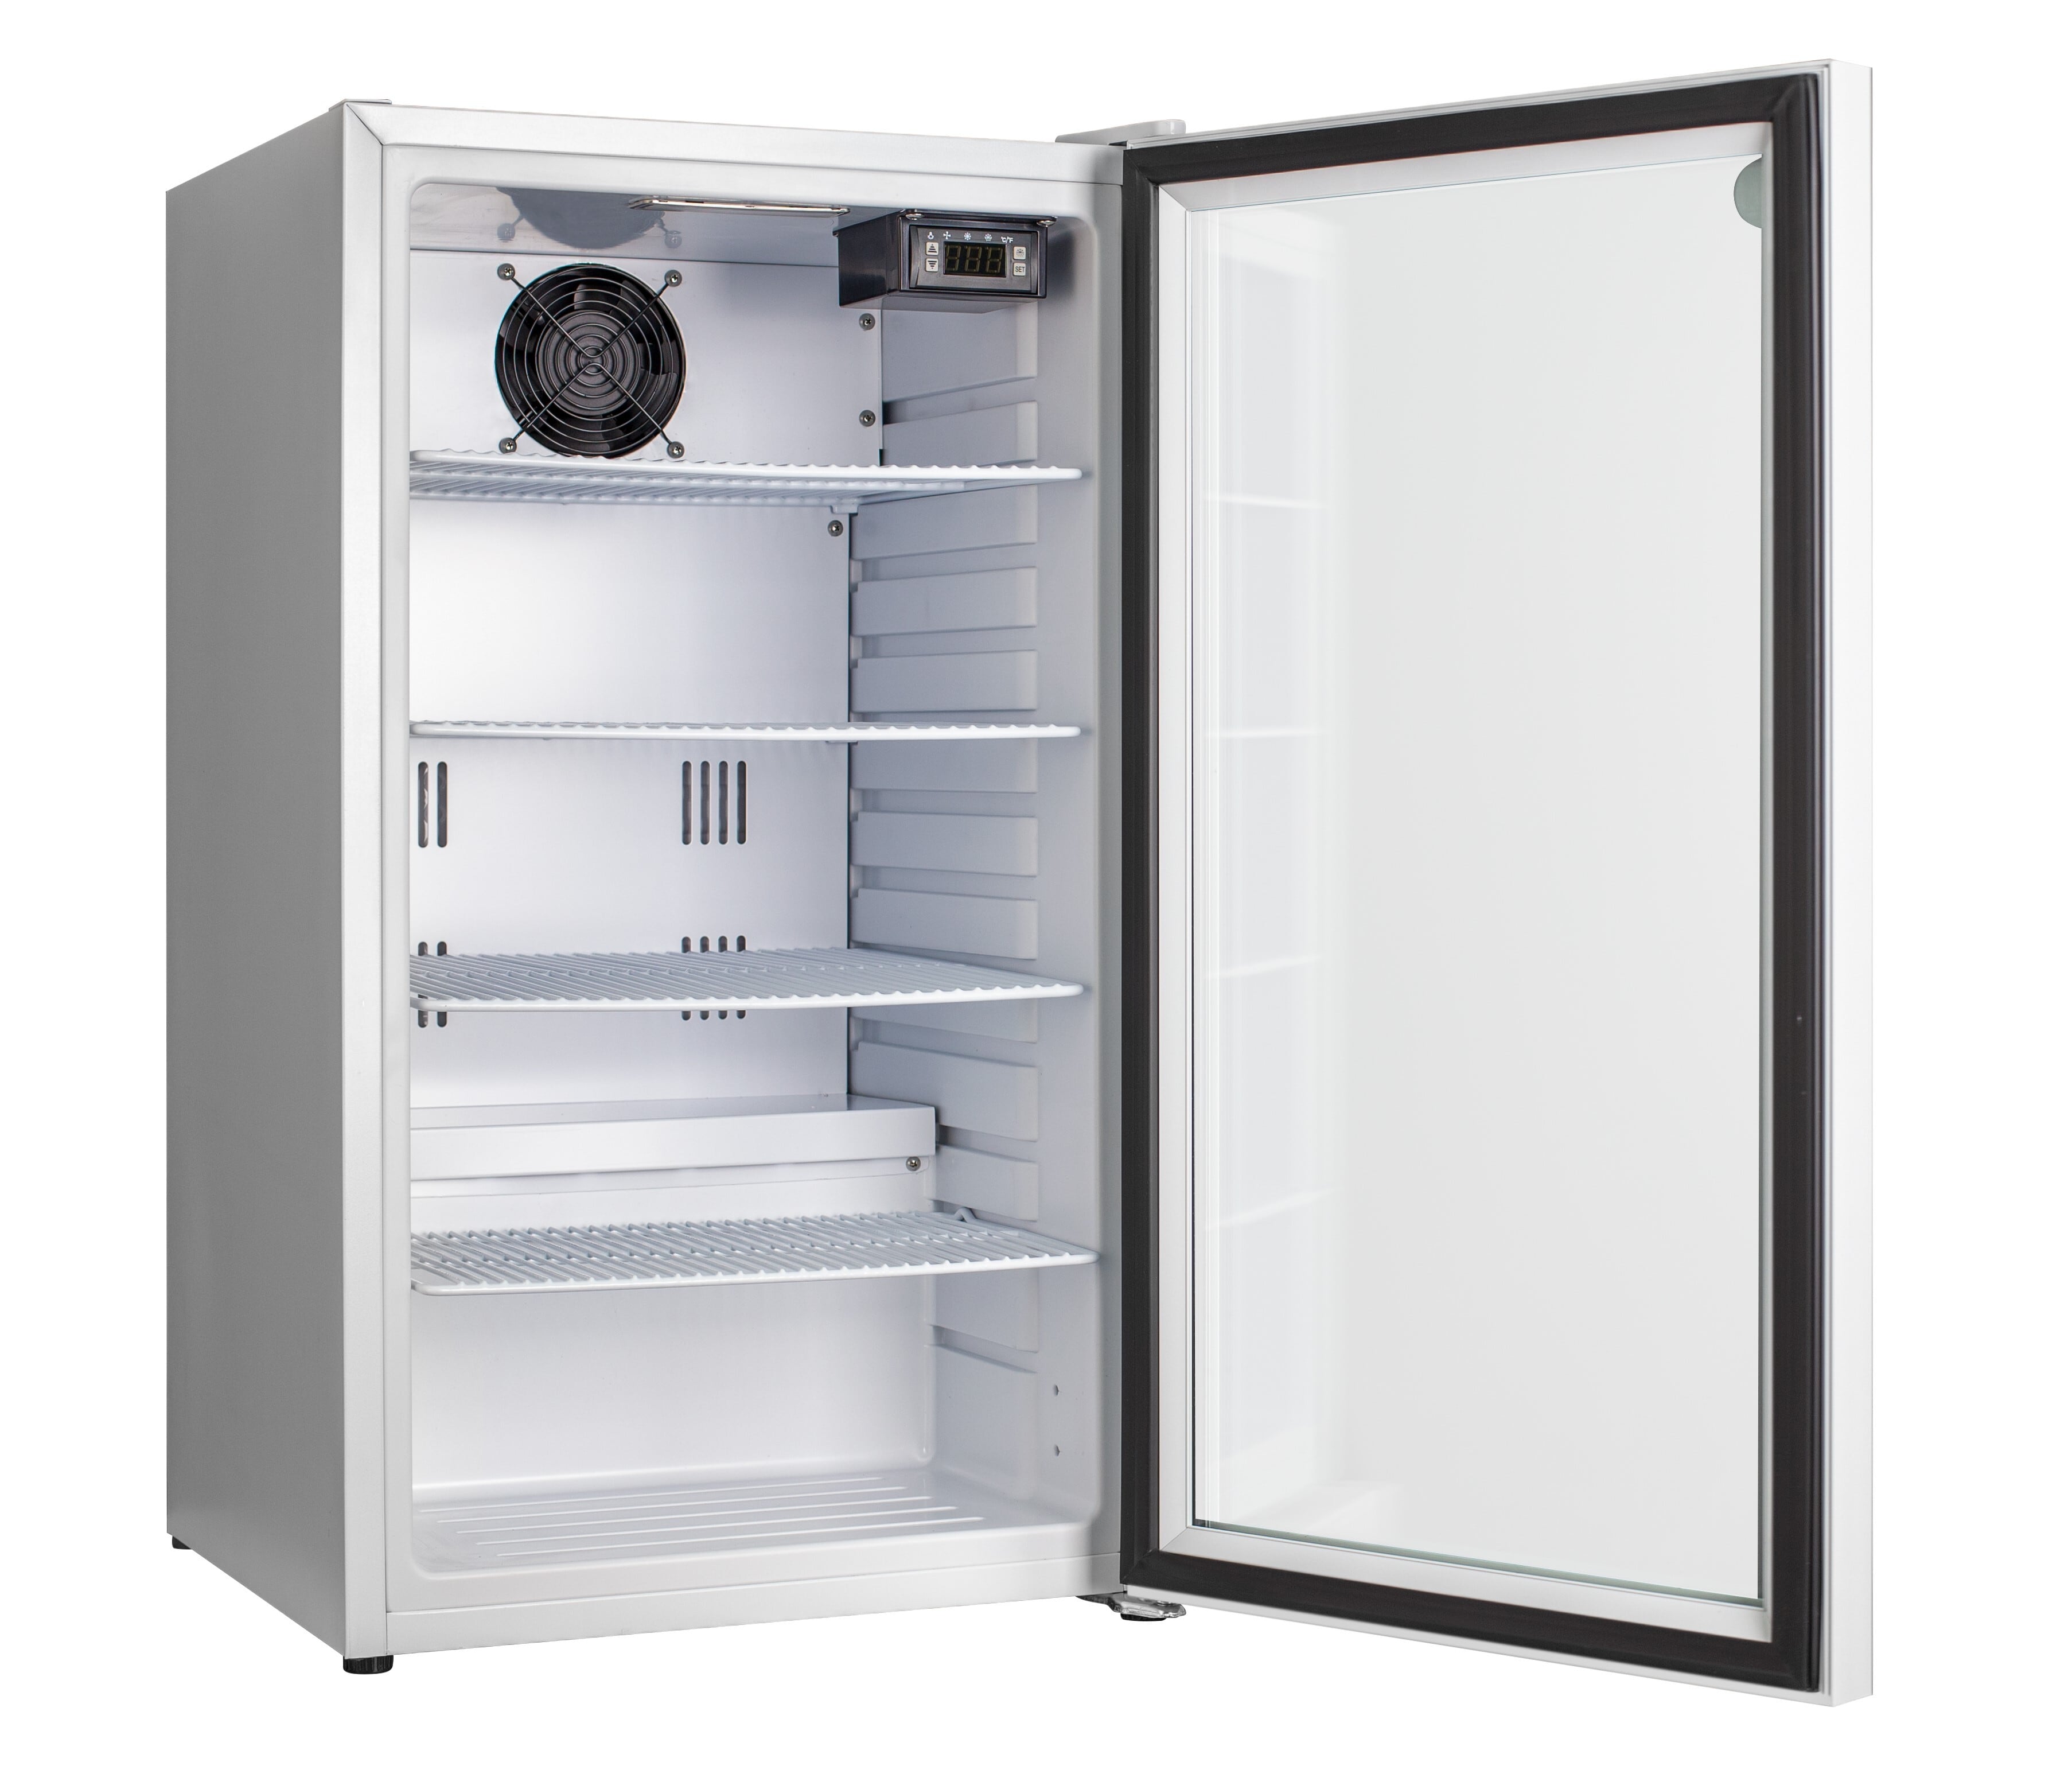 人気ブランド JCM 箱型冷蔵ショーケースJCMS-355B 冷蔵ショーケース 箱型 小型 冷蔵庫 ショーケース スライド扉 キュービックタイプ 